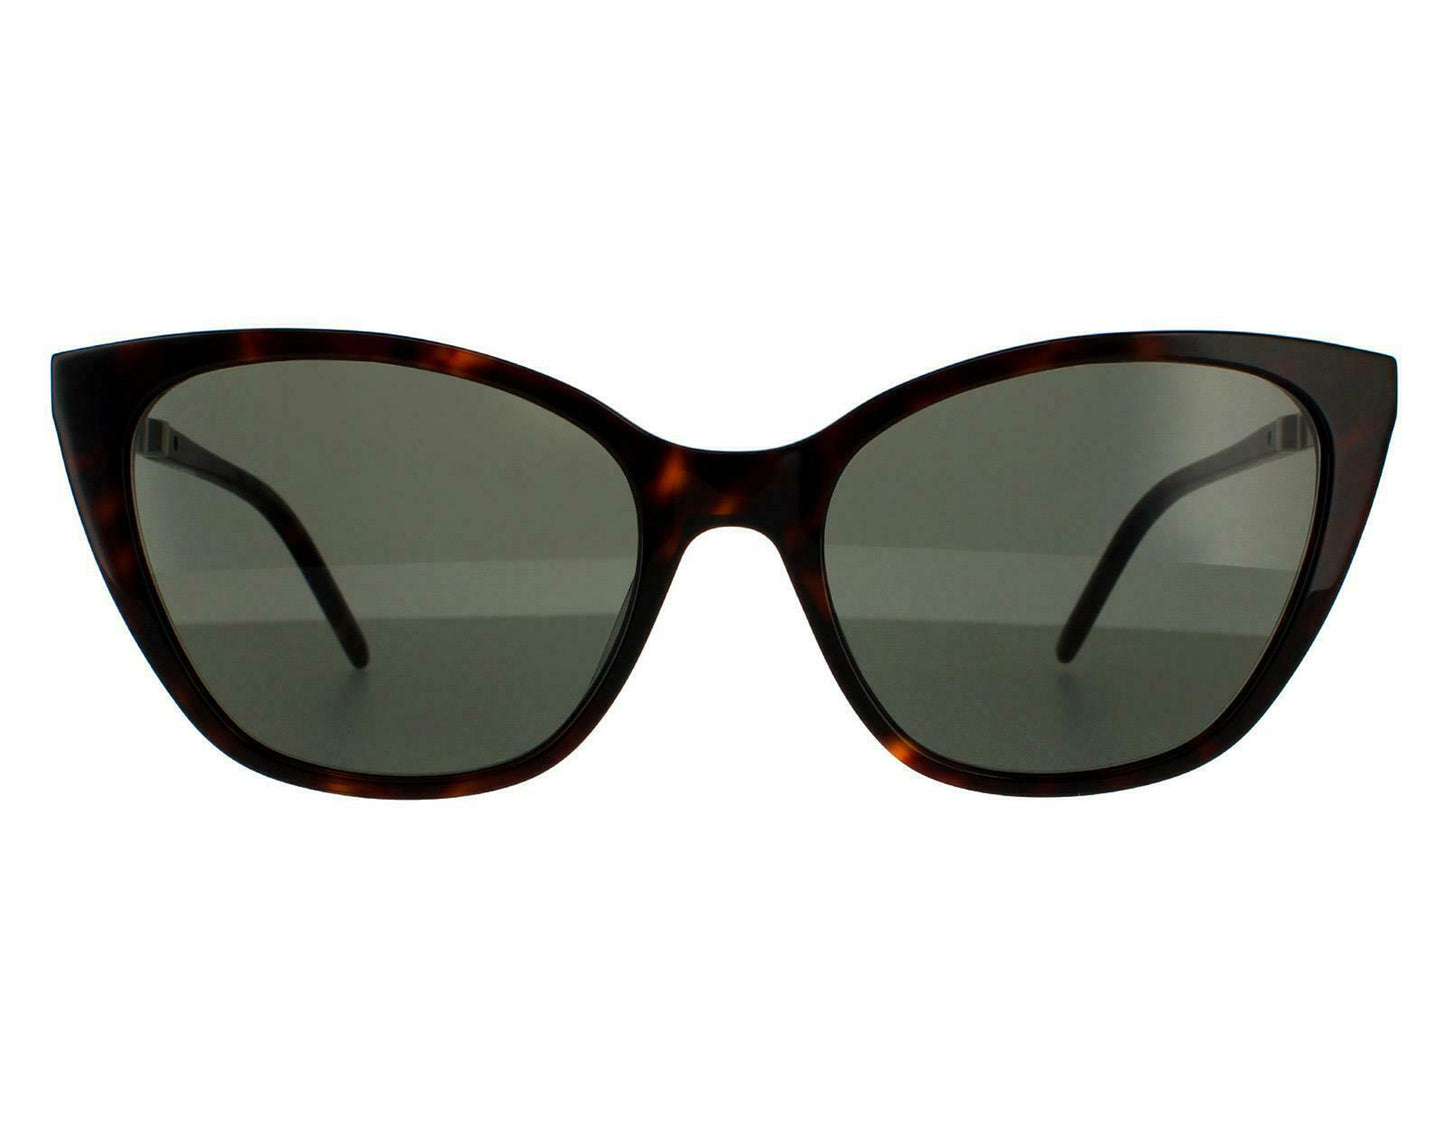 Yves Saint Laurent SLM69-004-56 56mm New Sunglasses